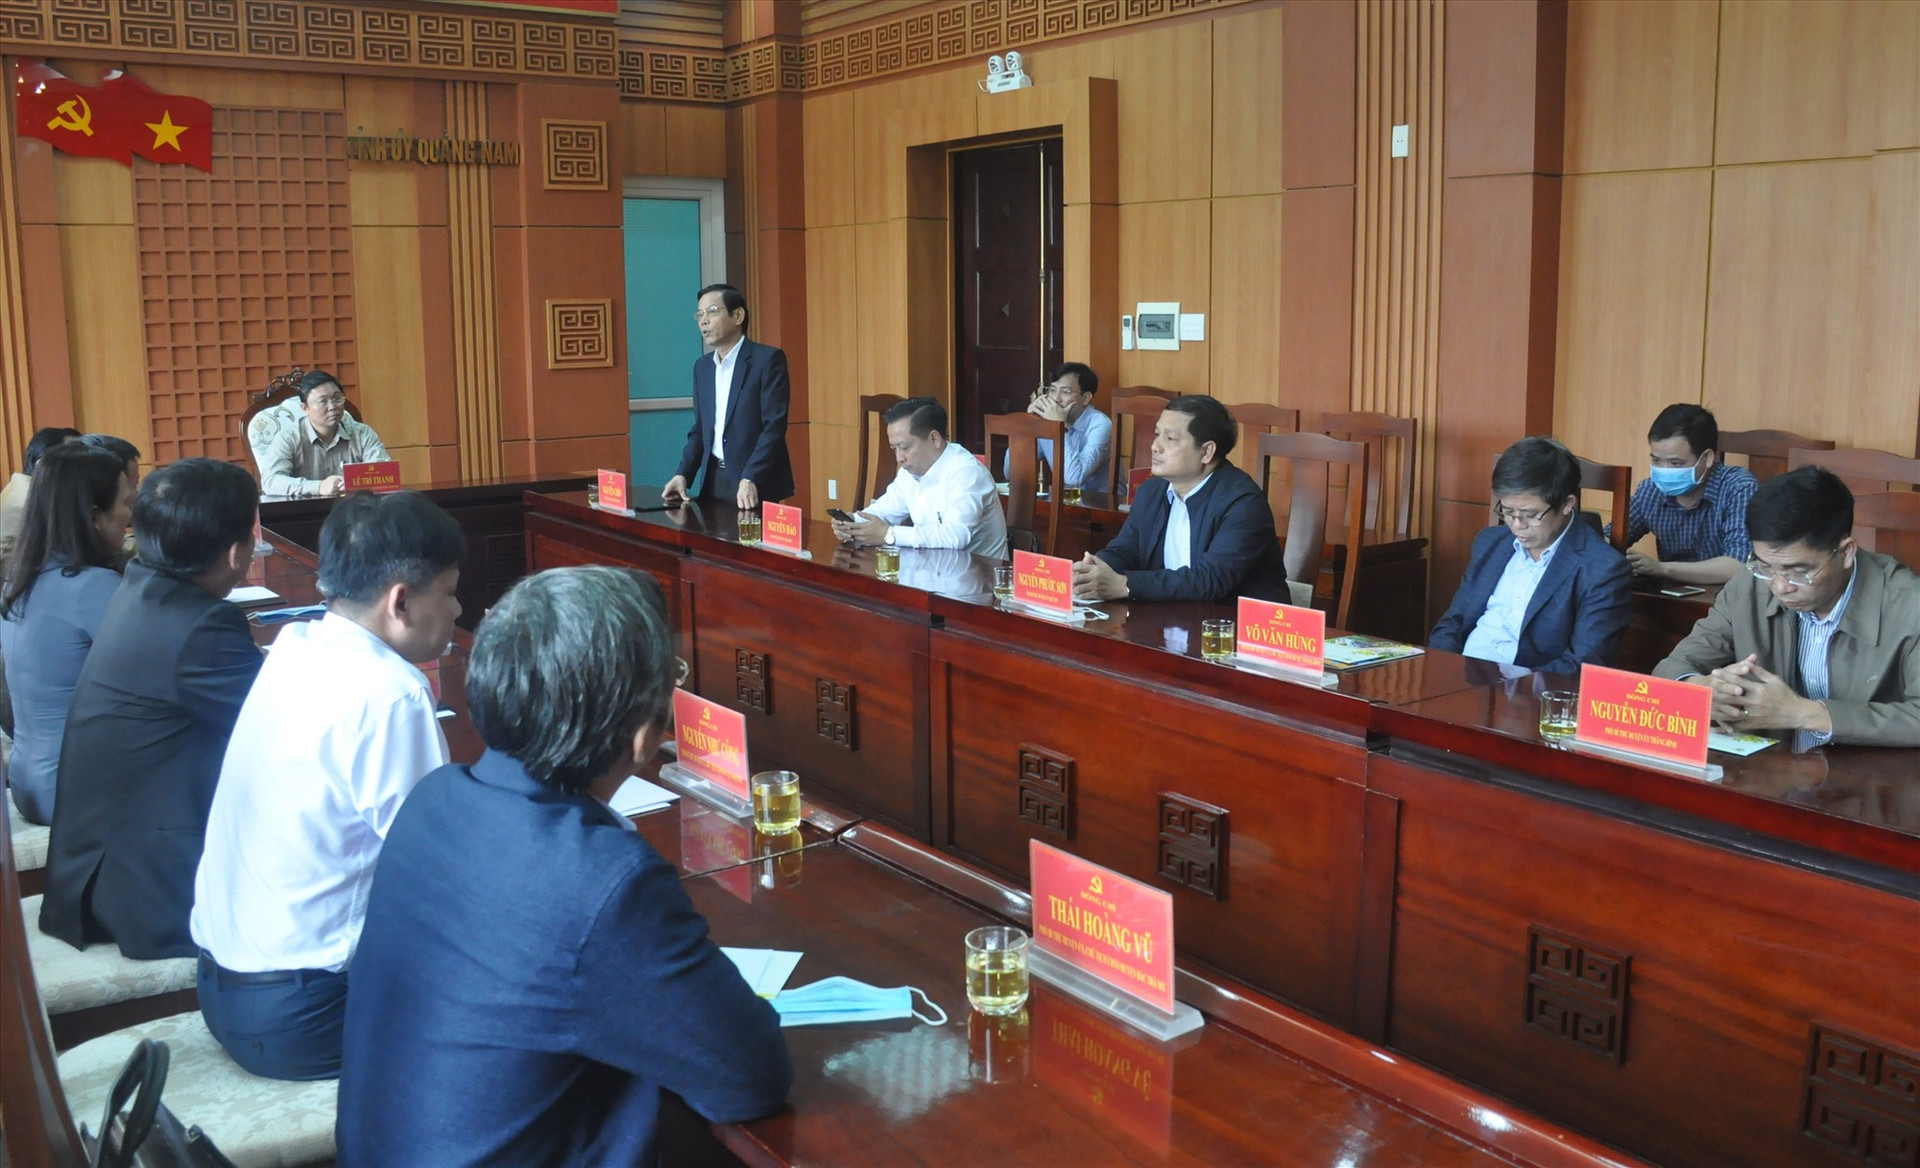 Trưởng ban Tổ chức Tỉnh ủy Nguyễn Chín cho biết, trong năm 2021 tỉnh sẽ thực hiện chủ trương bí thư cấp ủy không là người địa phương. Ảnh: N.Đ